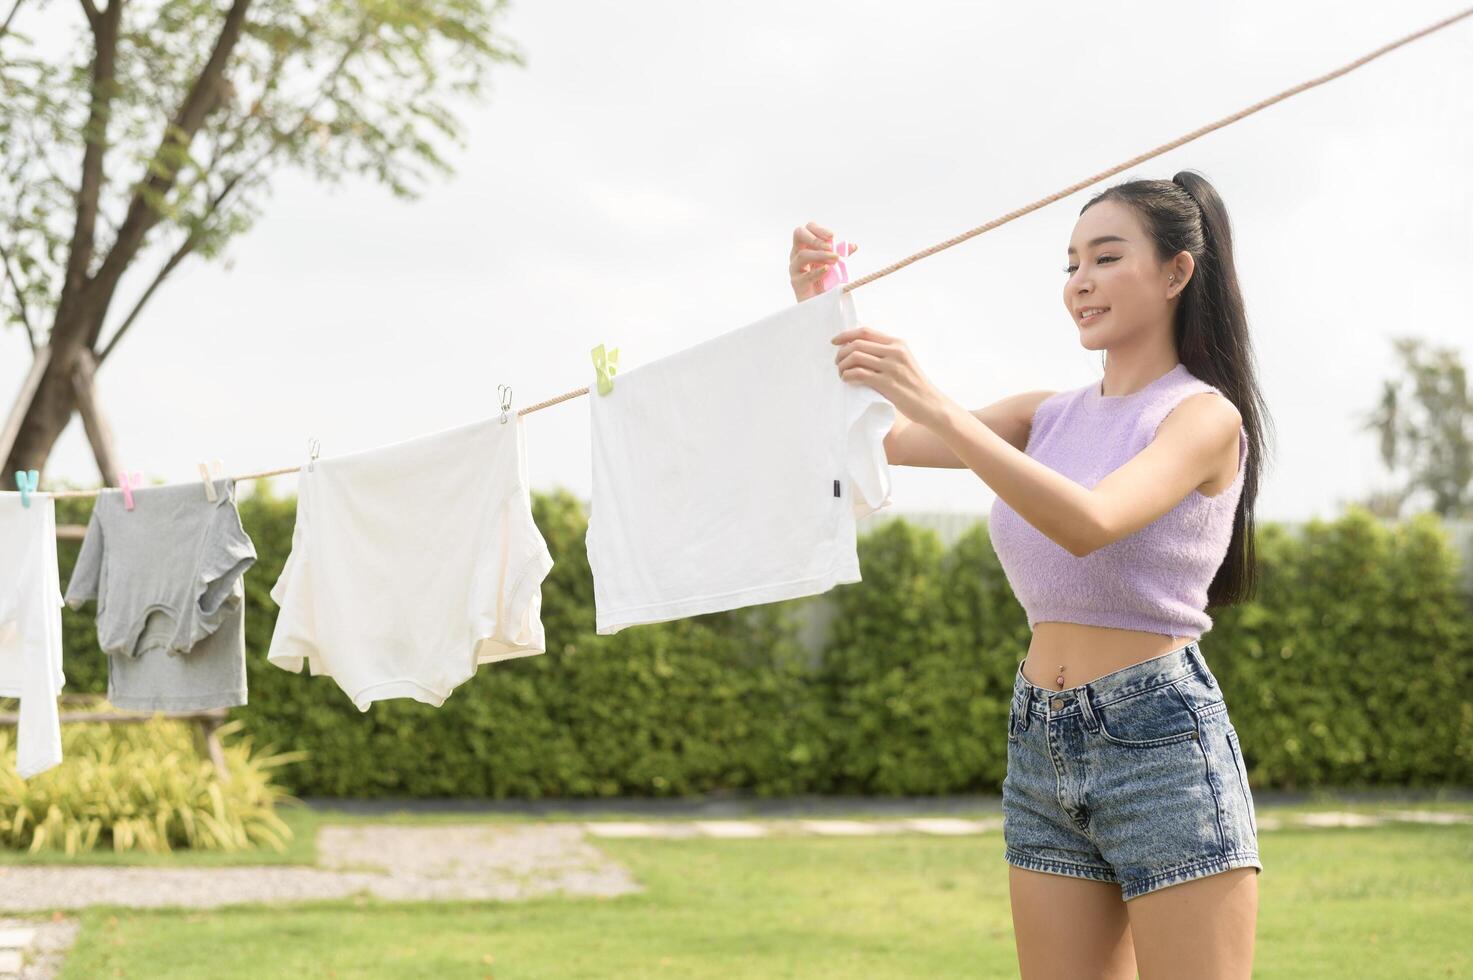 jung asiatisch Frau hängend Wäsche auf Waschen Linie zum Trocknen gegen Blau Himmel draussen foto